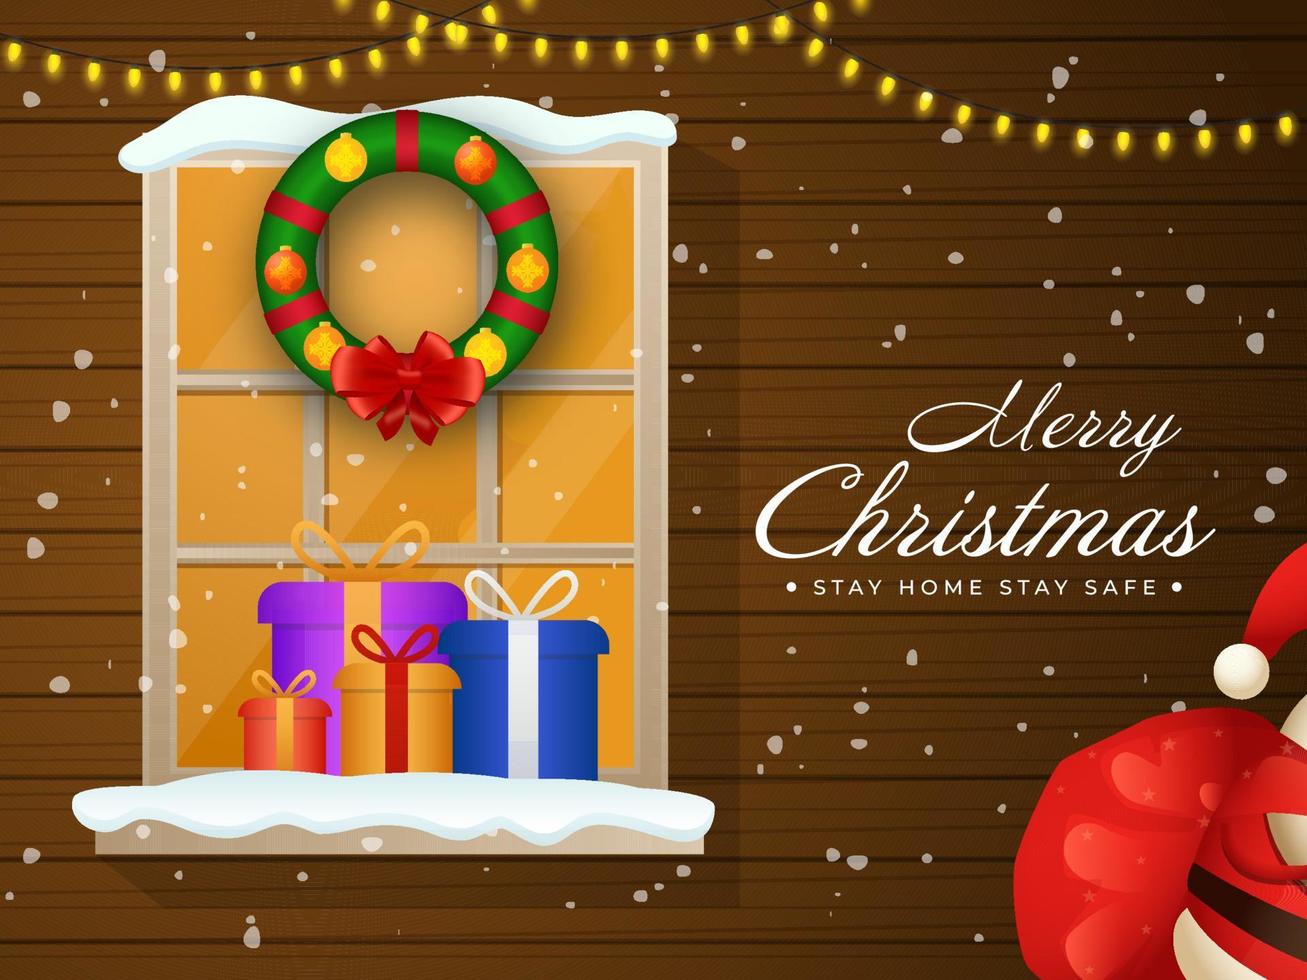 marron en bois chute de neige Contexte avec éclairage guirlande, fenêtre, décor couronne, cadeau des boites sur le occasion de joyeux Noël rester Accueil rester sûr. vecteur